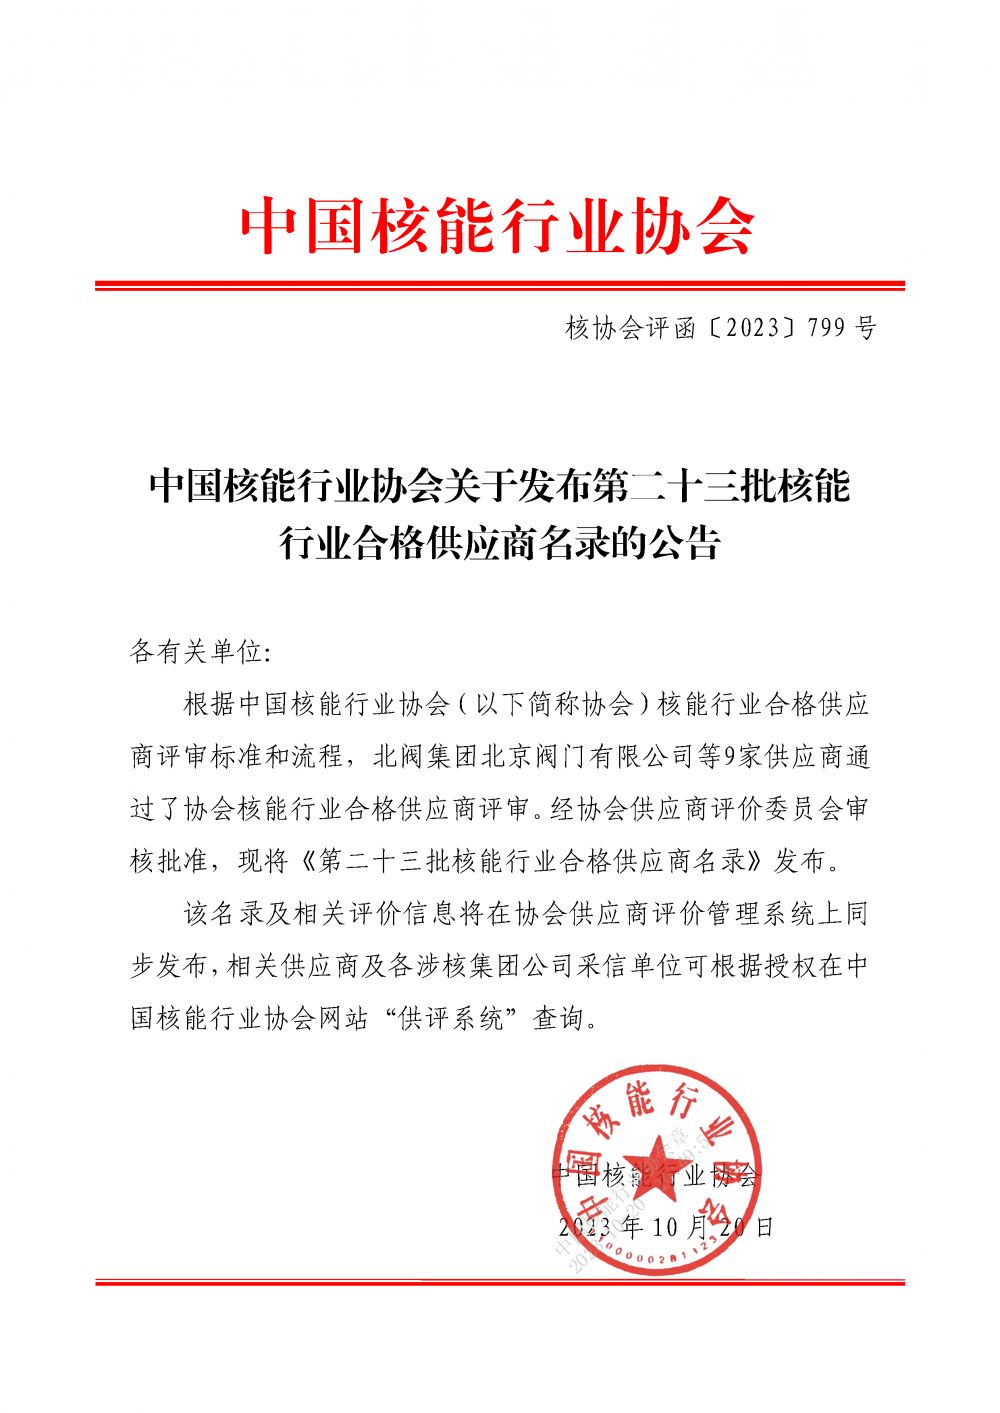 中国核能行业协会关于发布第二十三批核能行业合格供应商名录的公告_页面_1.png